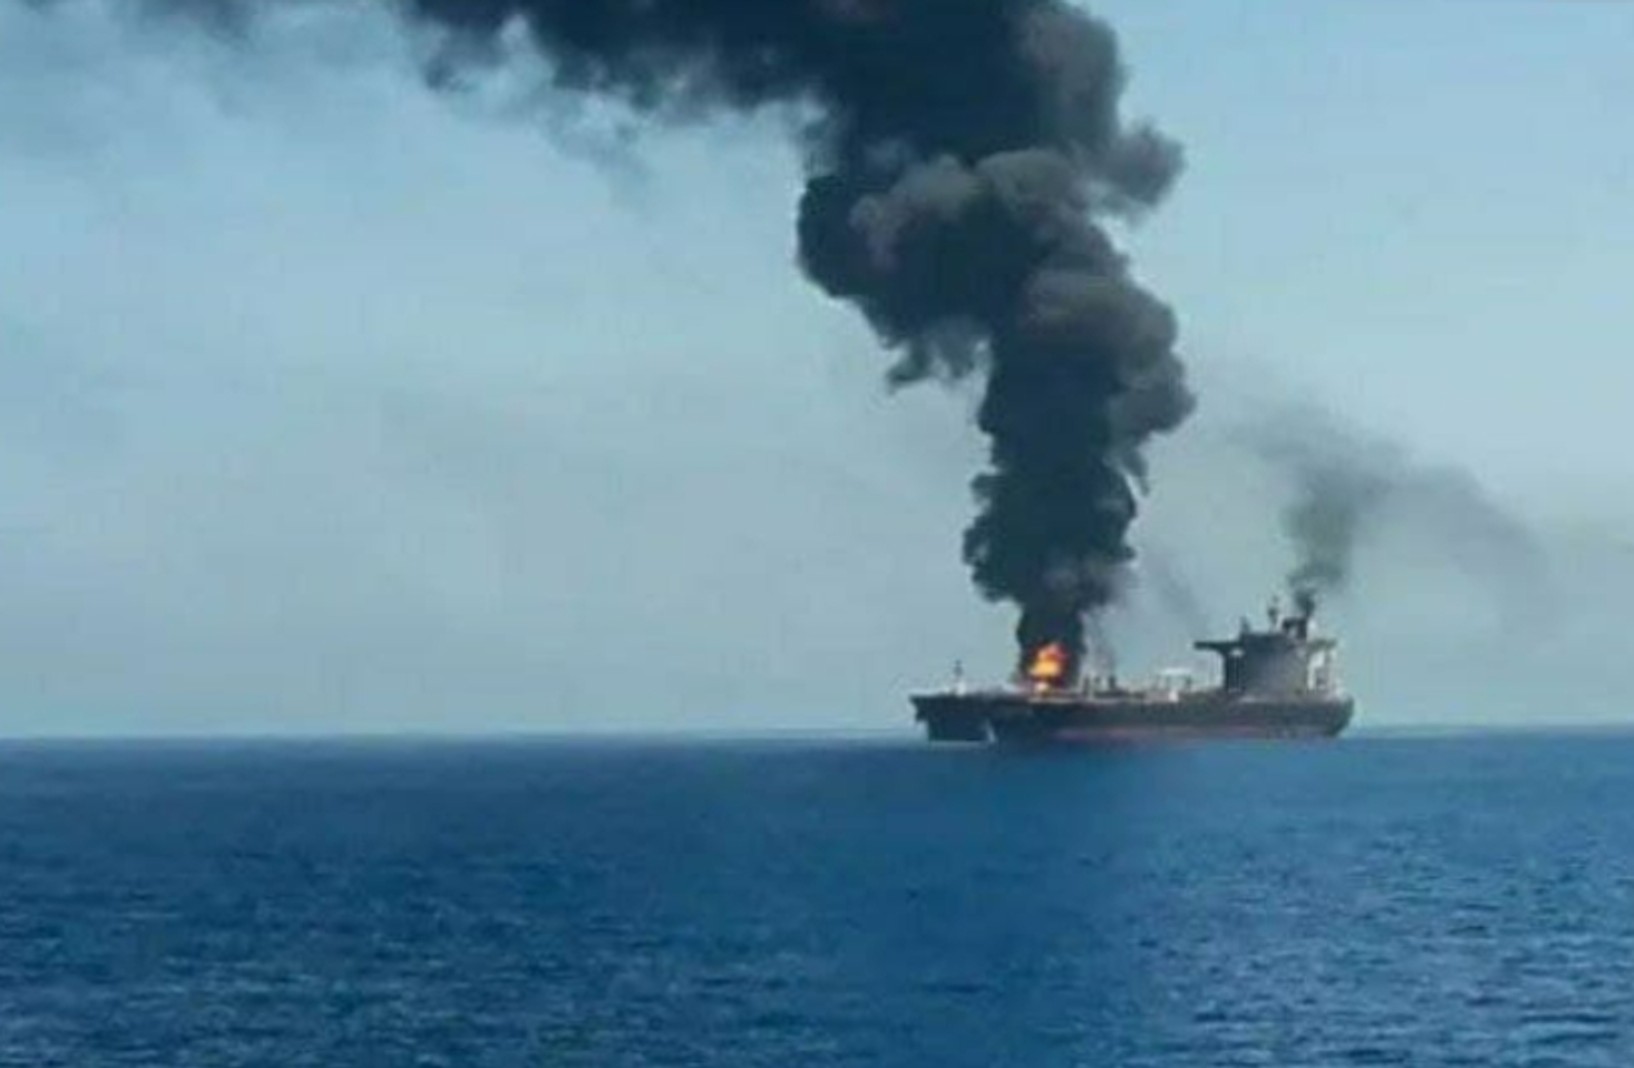 США, Великобританія і Ізраїль звинувачують Іран в нападі на танкер Mercer Street